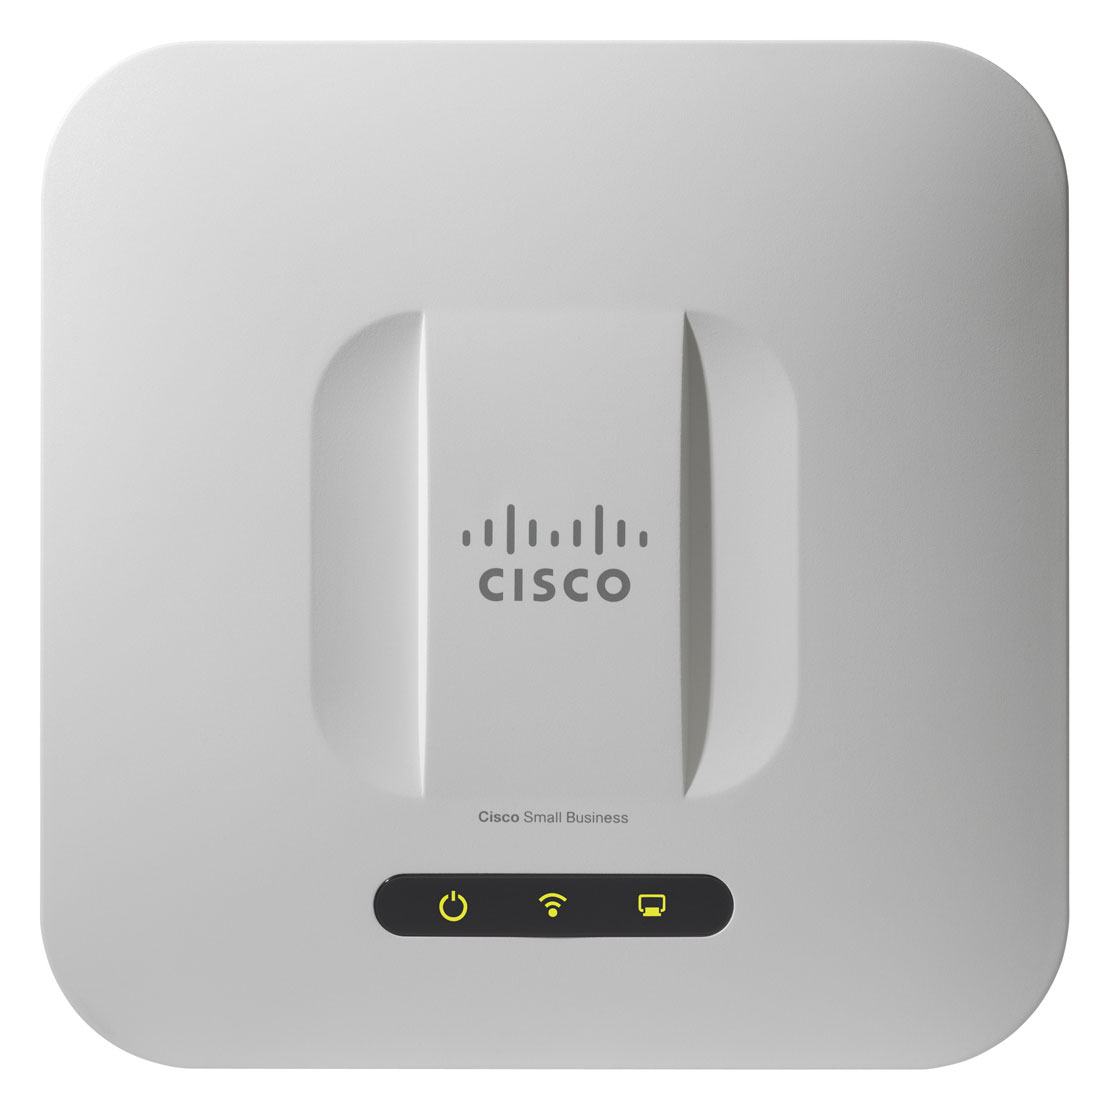 Access Point Cisco Cài Đặt, Tính Năng và Lợi Ích